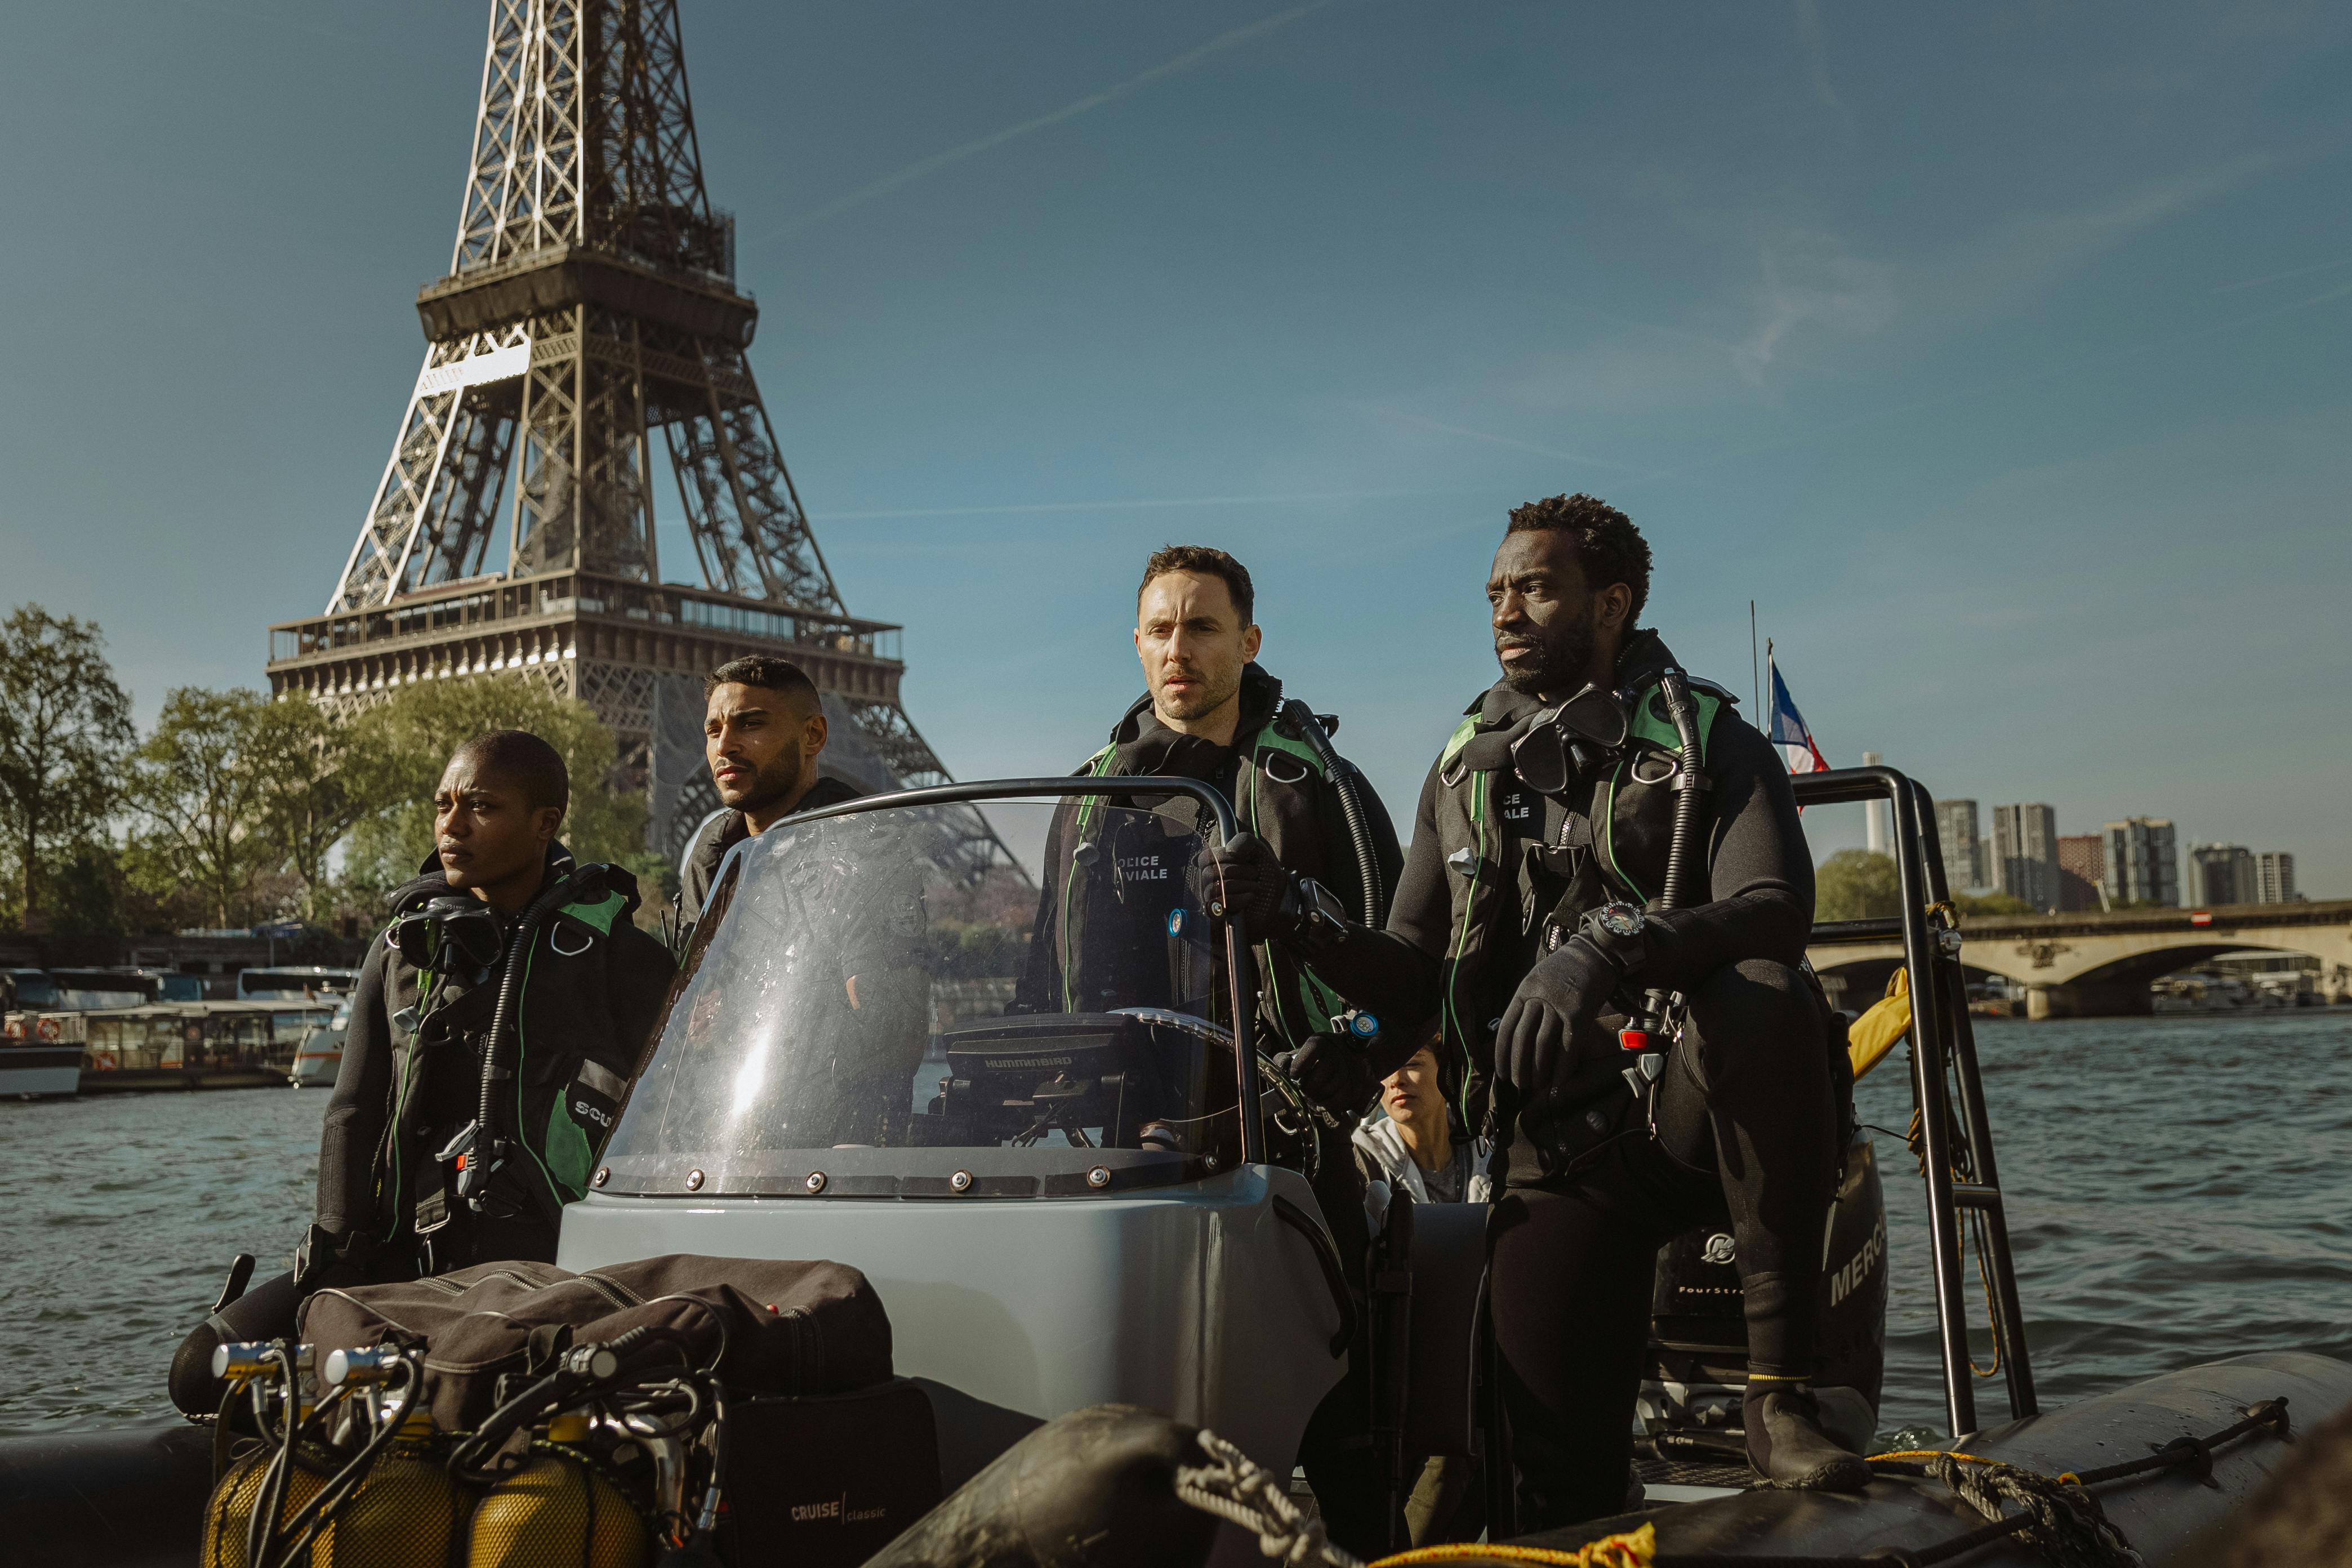 anmeldelse af 'Under Paris' på Netflix